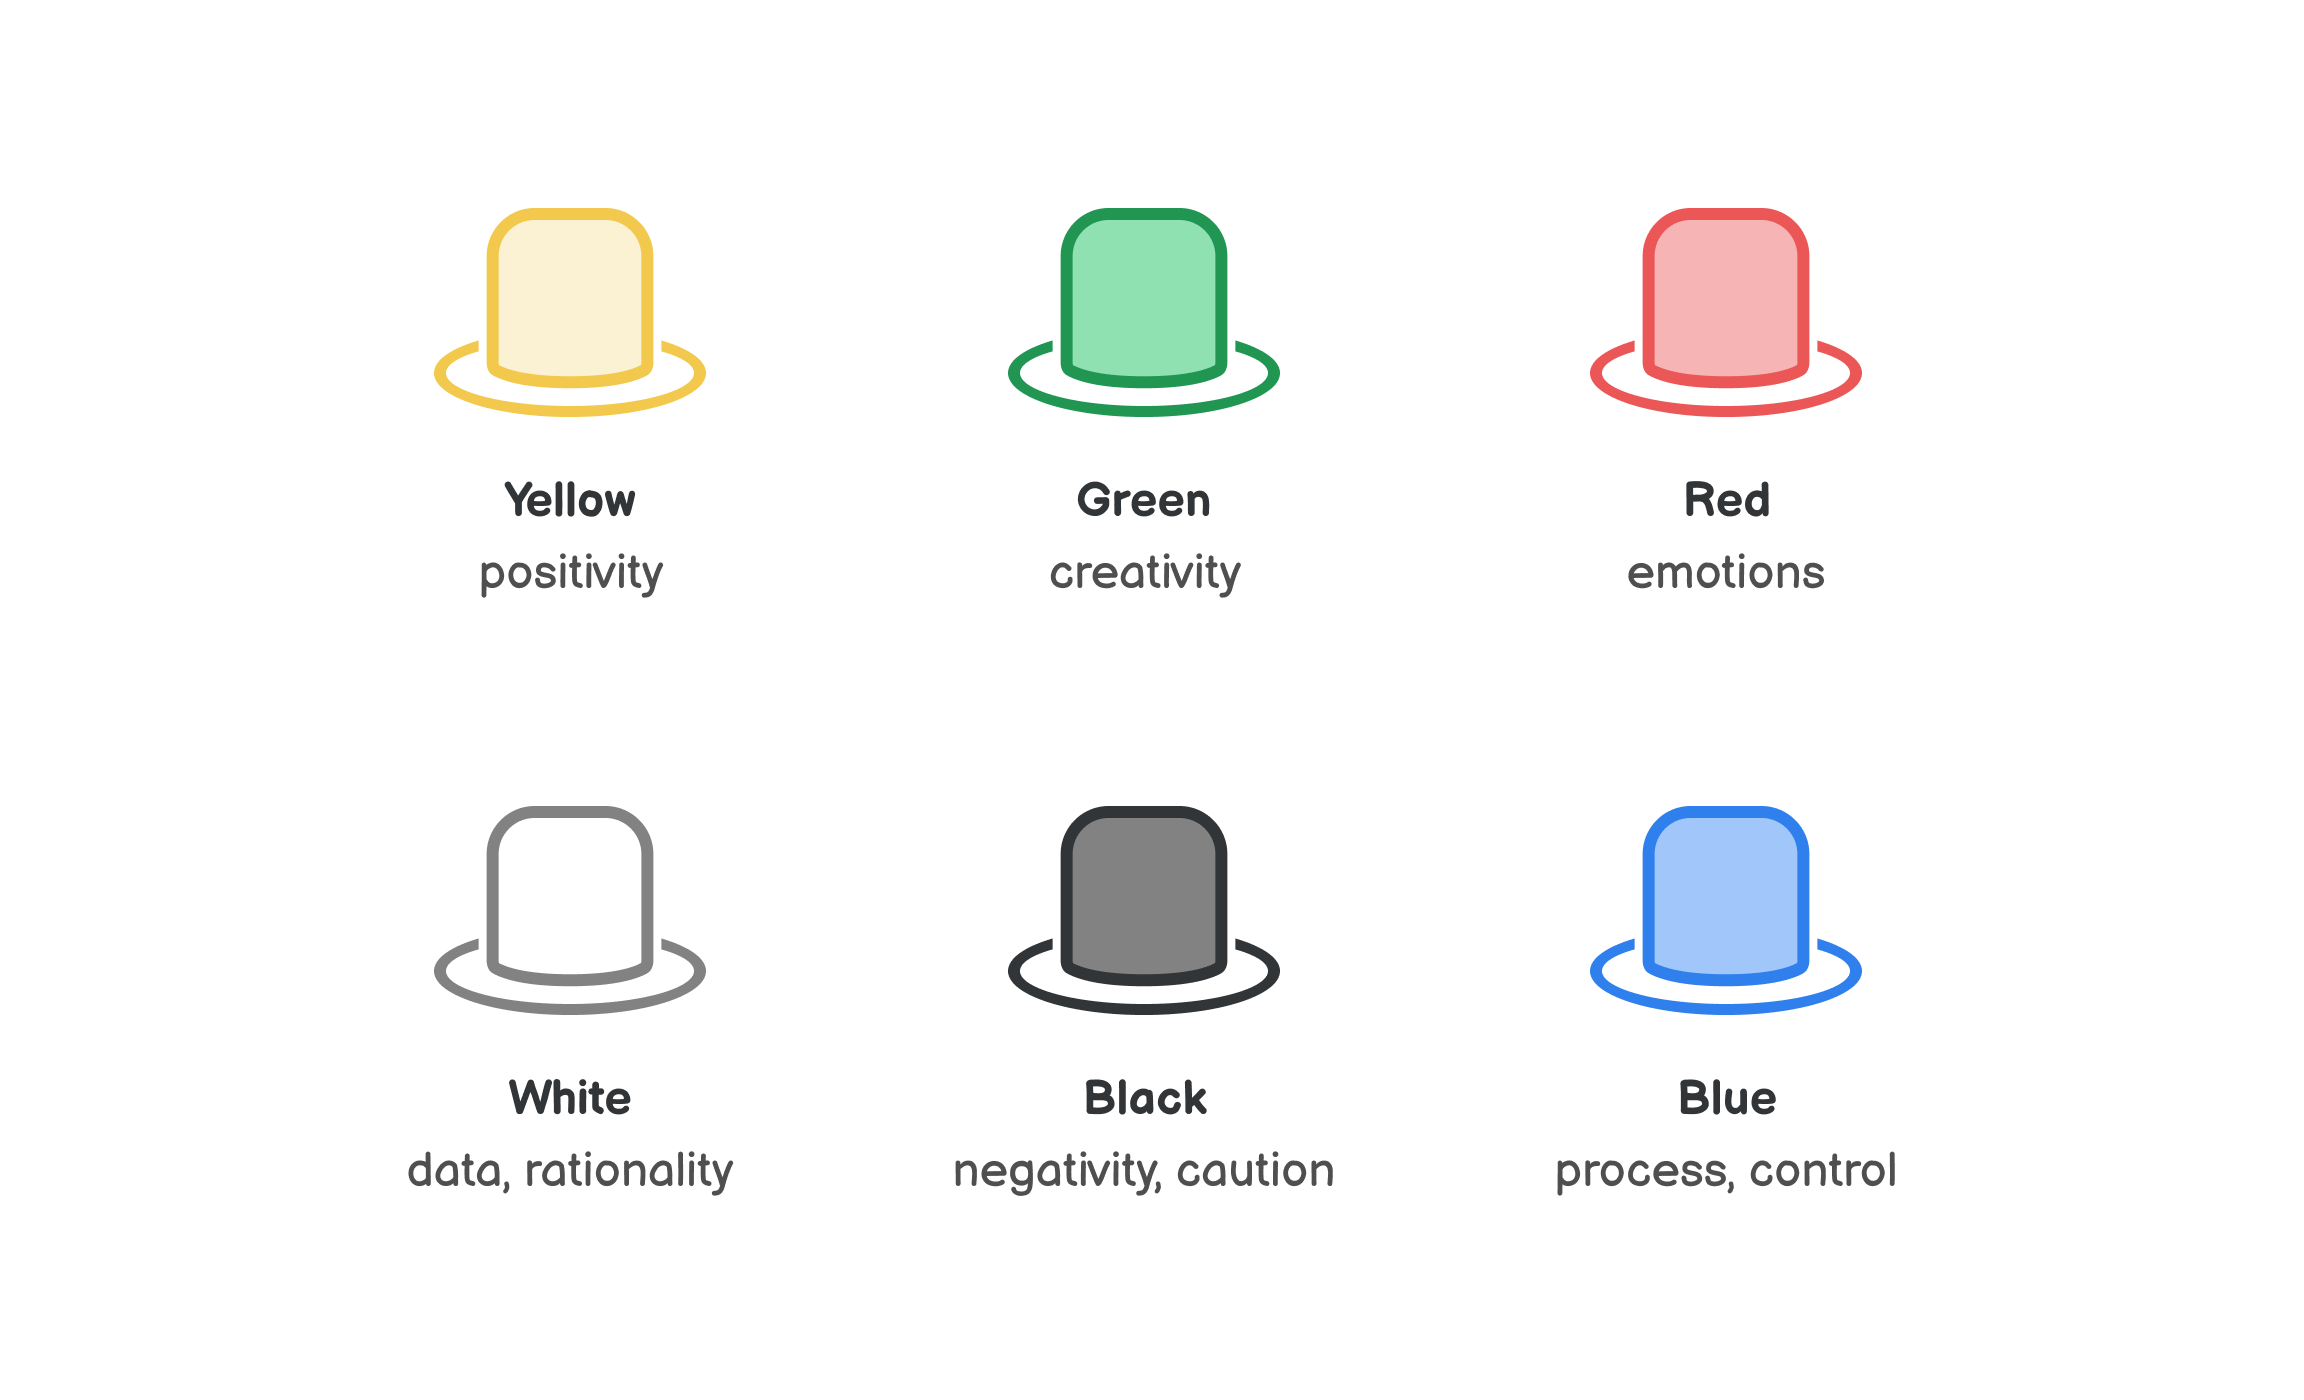 بکار گیری تکنیک شش کلاه تفکر در طراحی

